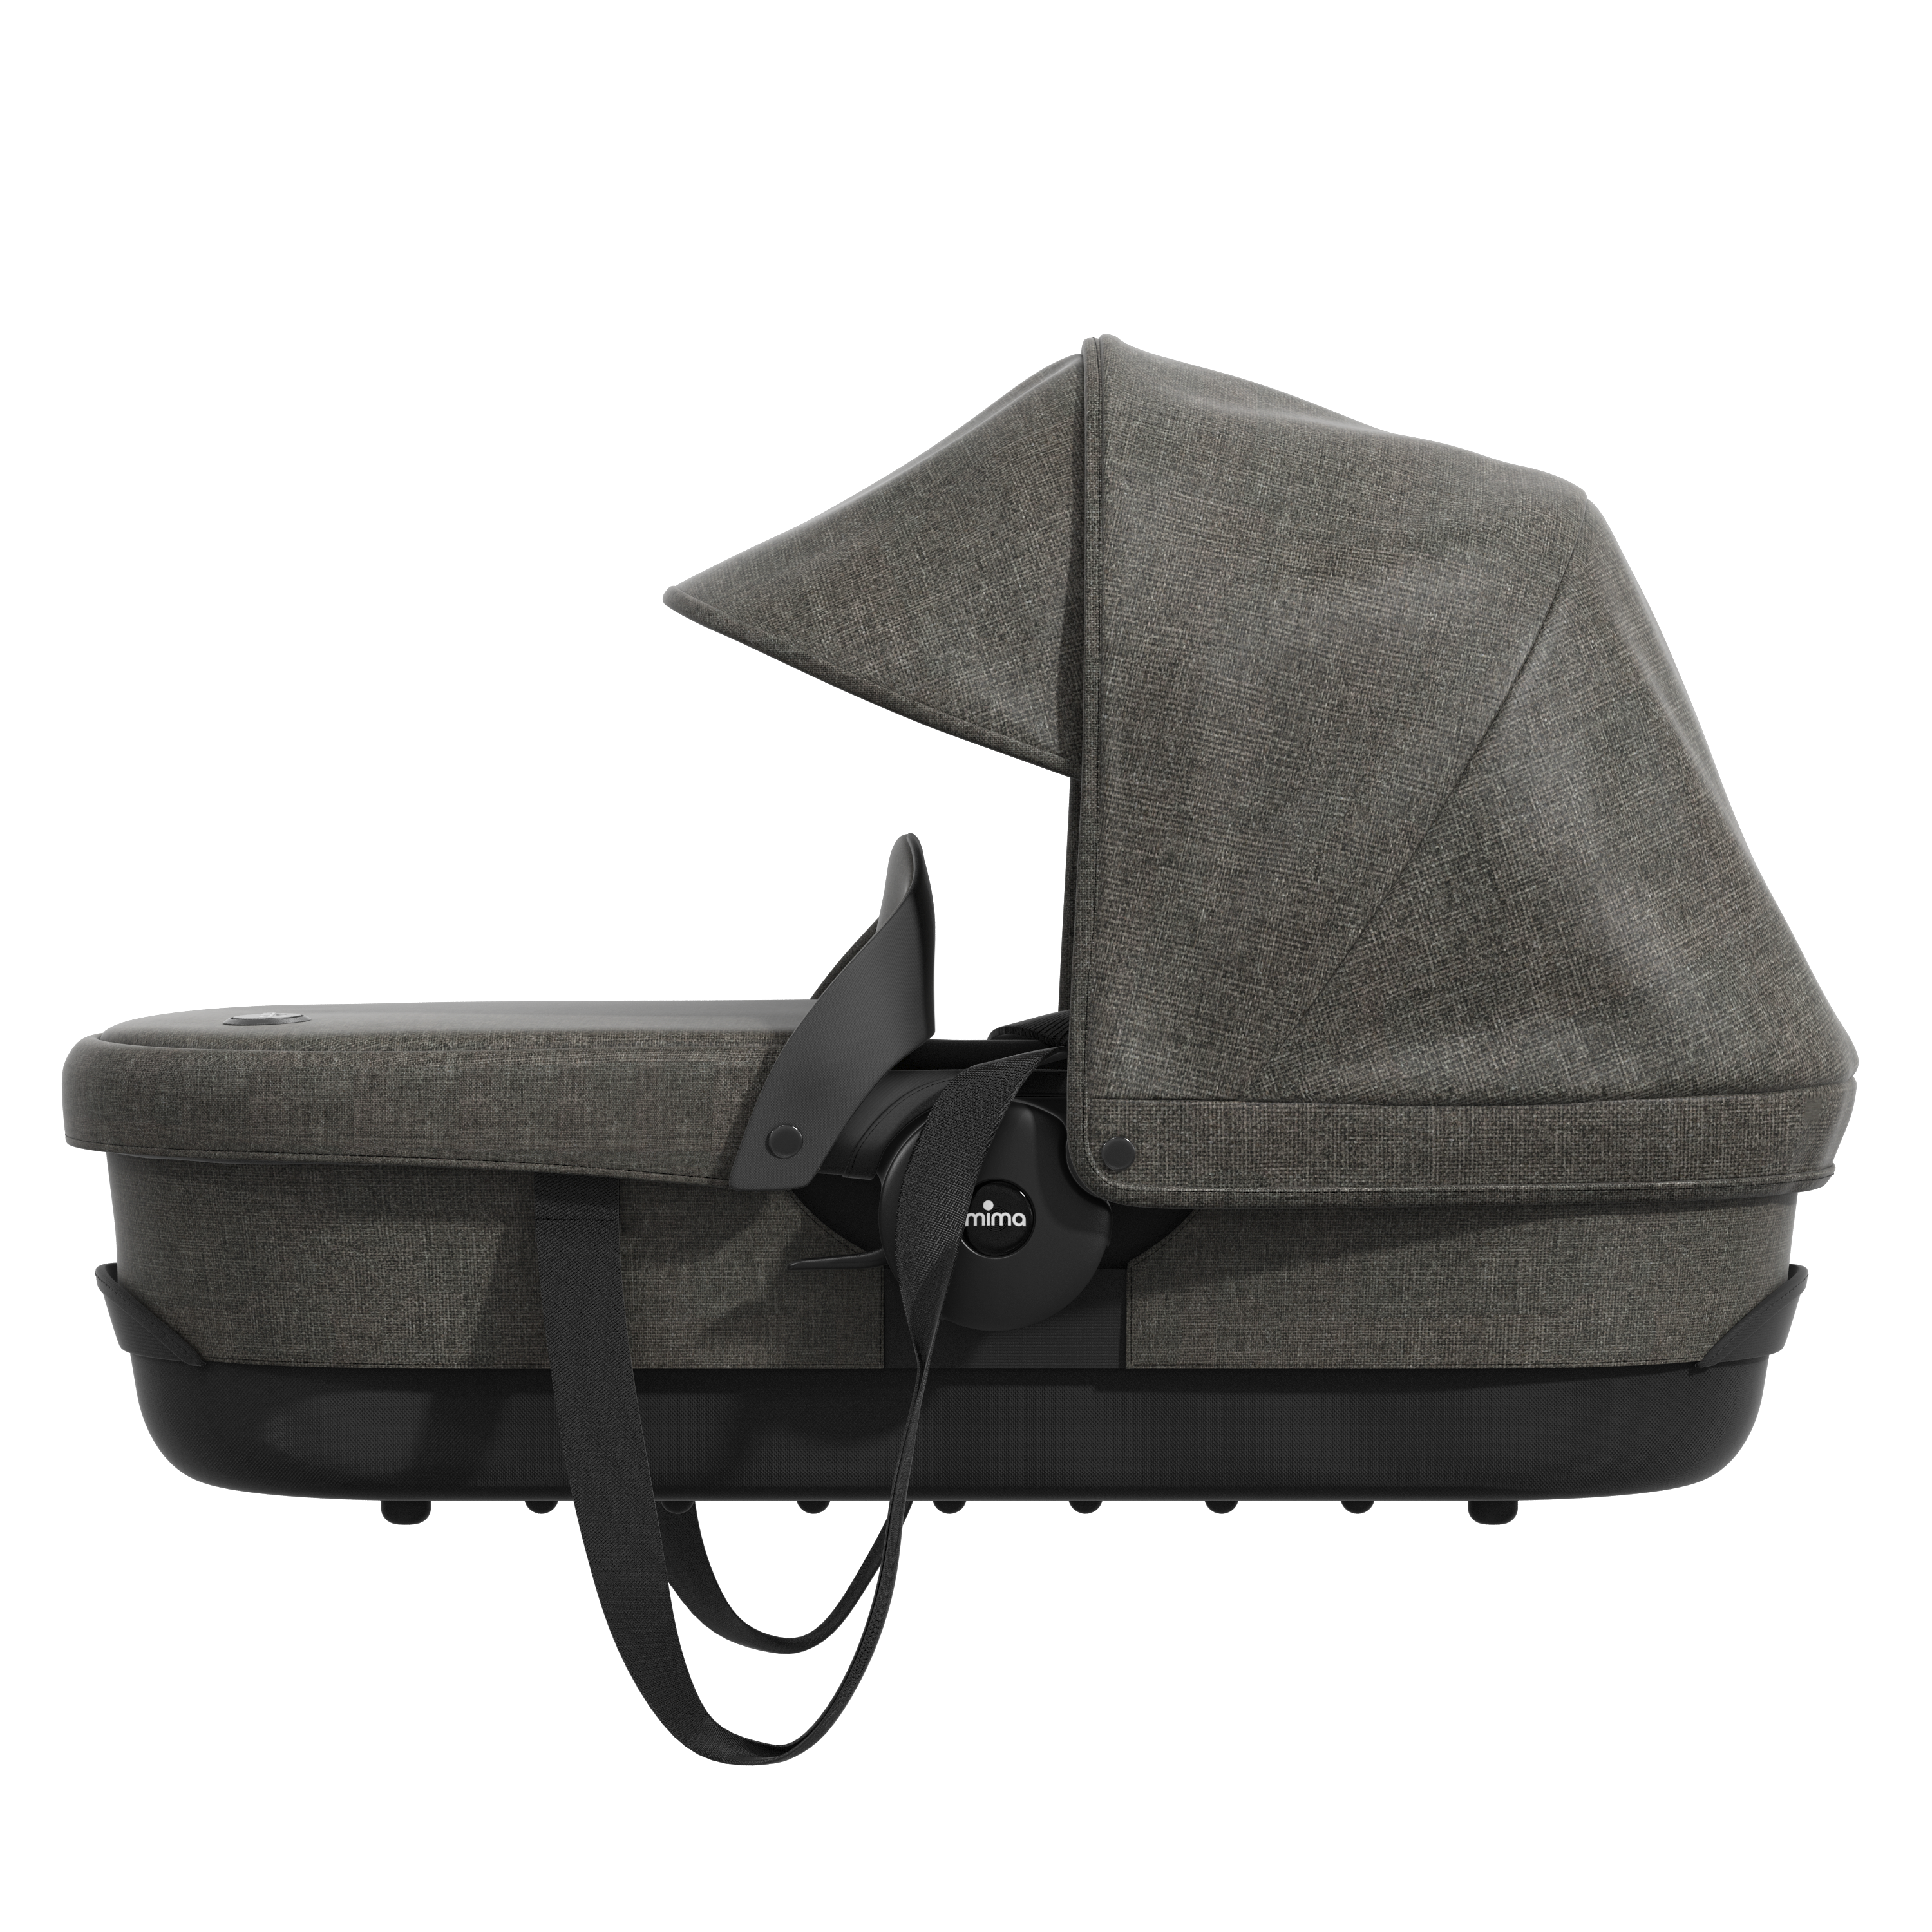 Mima Zigi nosiljka za kolica Charcoal a301201-01